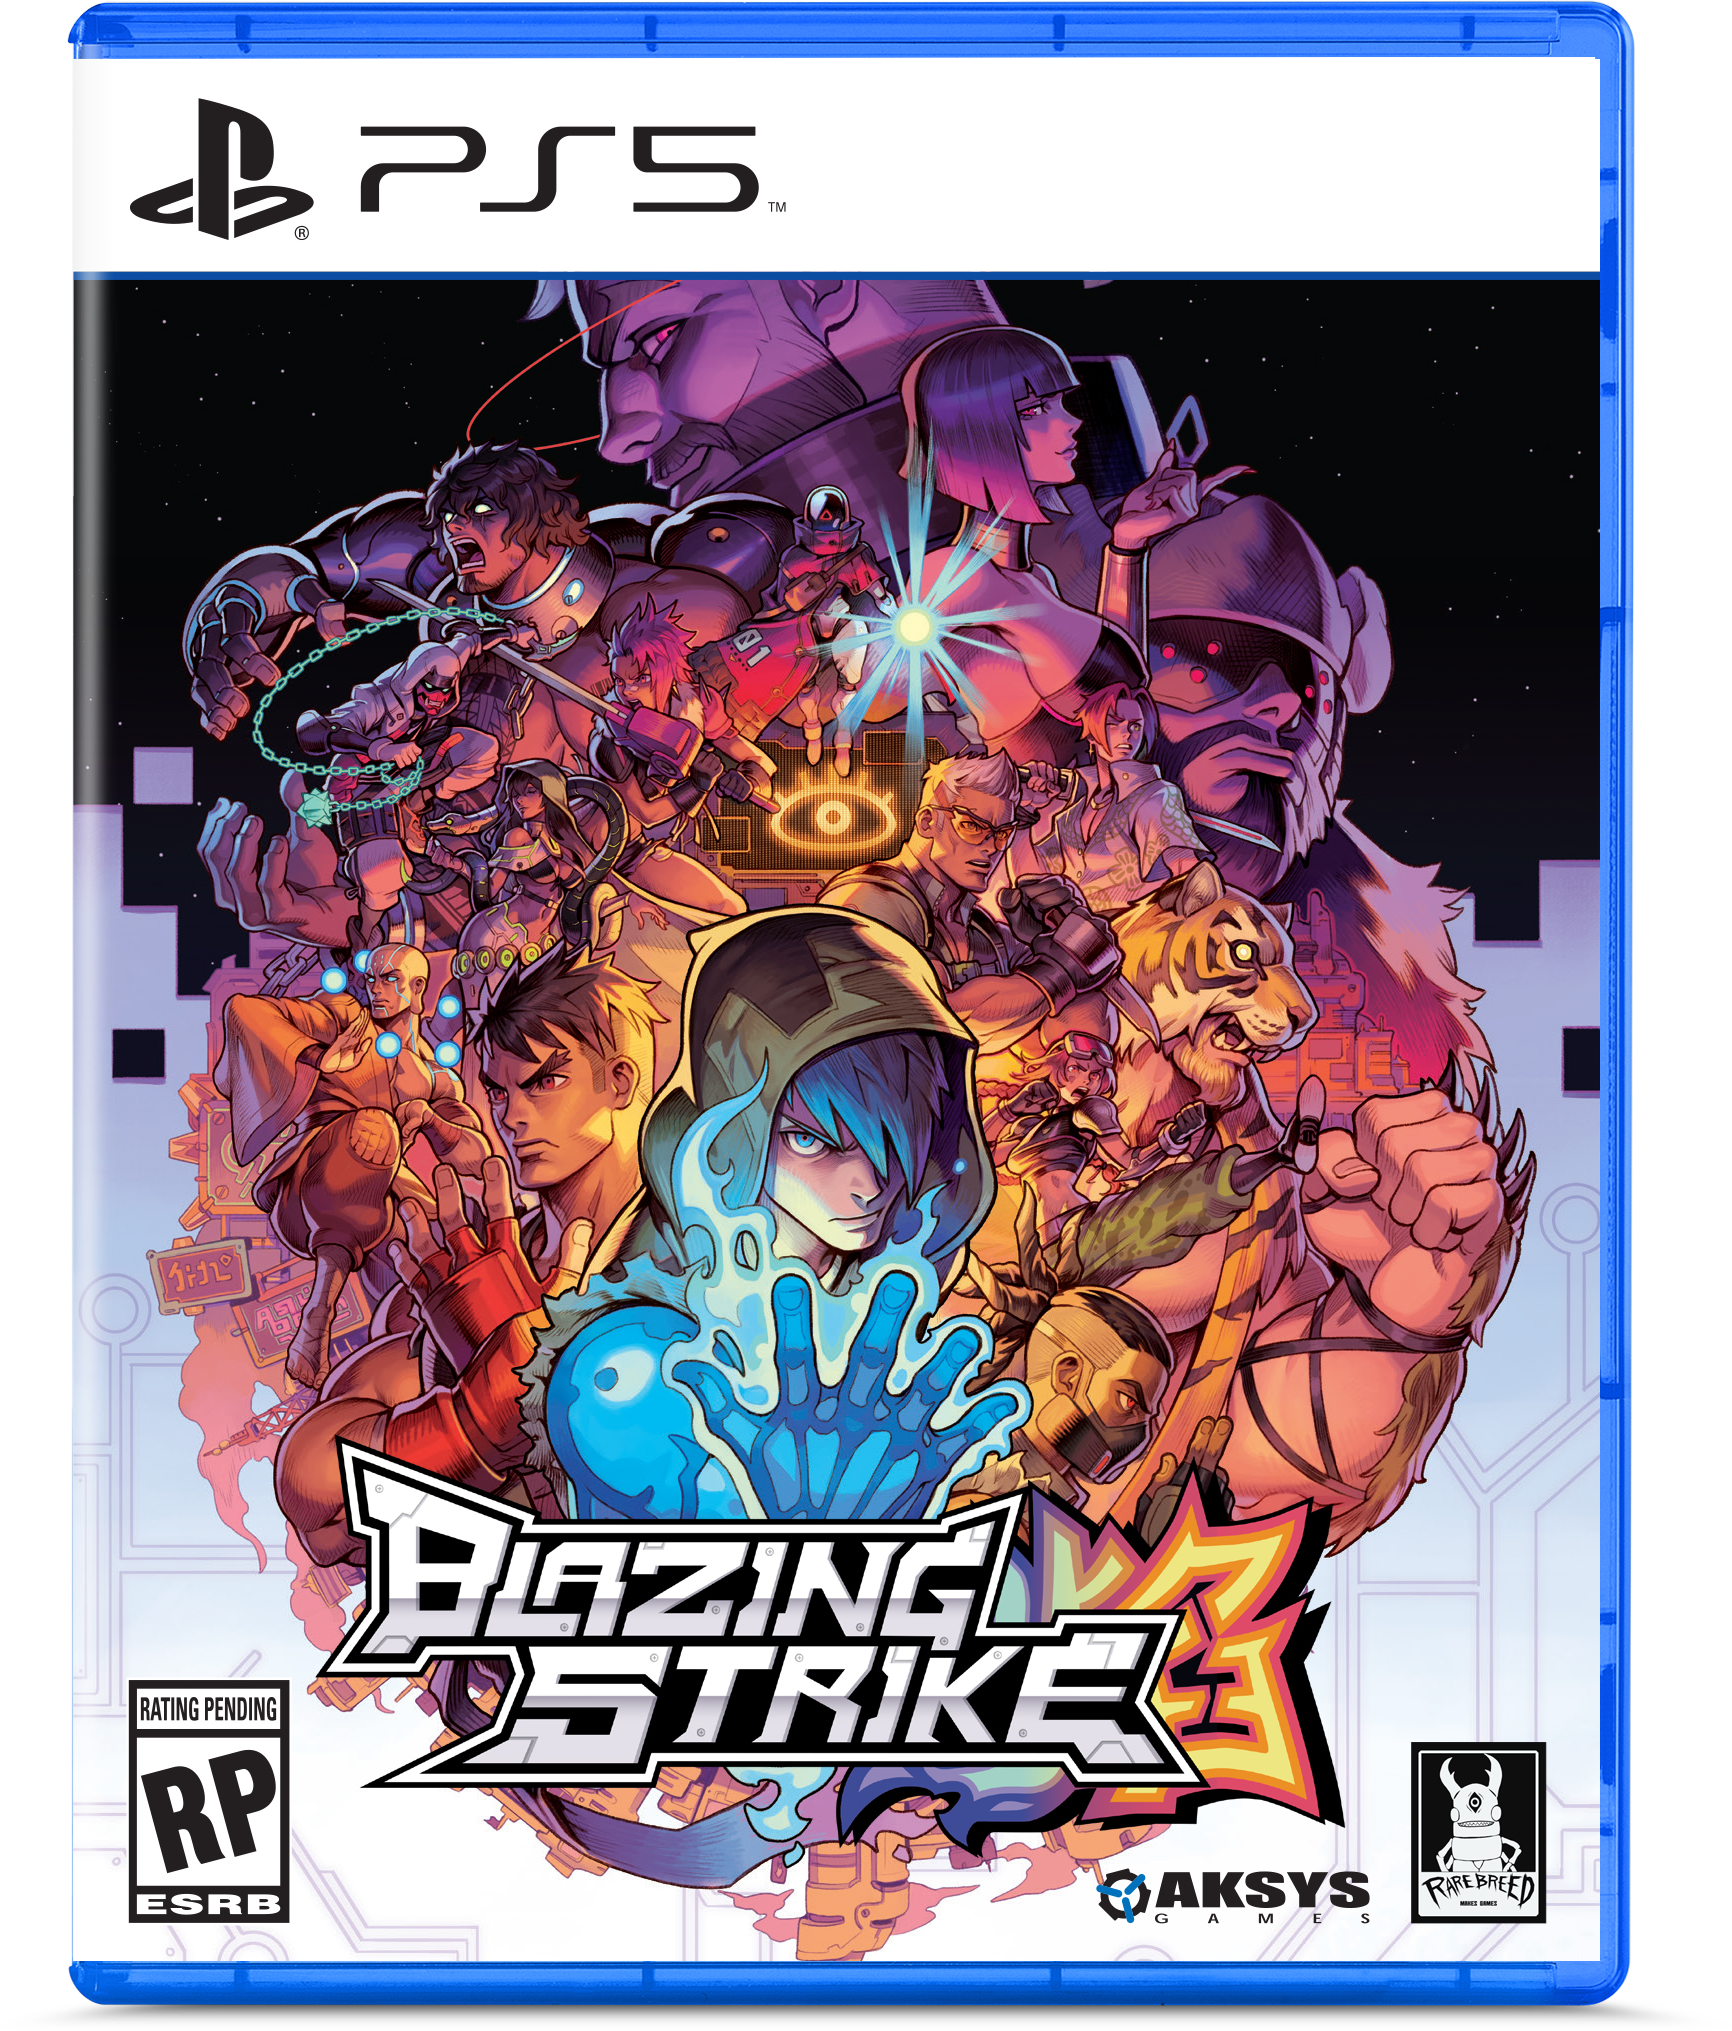 Blazing Strike, jogo de luta com estética retrô, ganha primeiro trailer! -  Combo Infinito